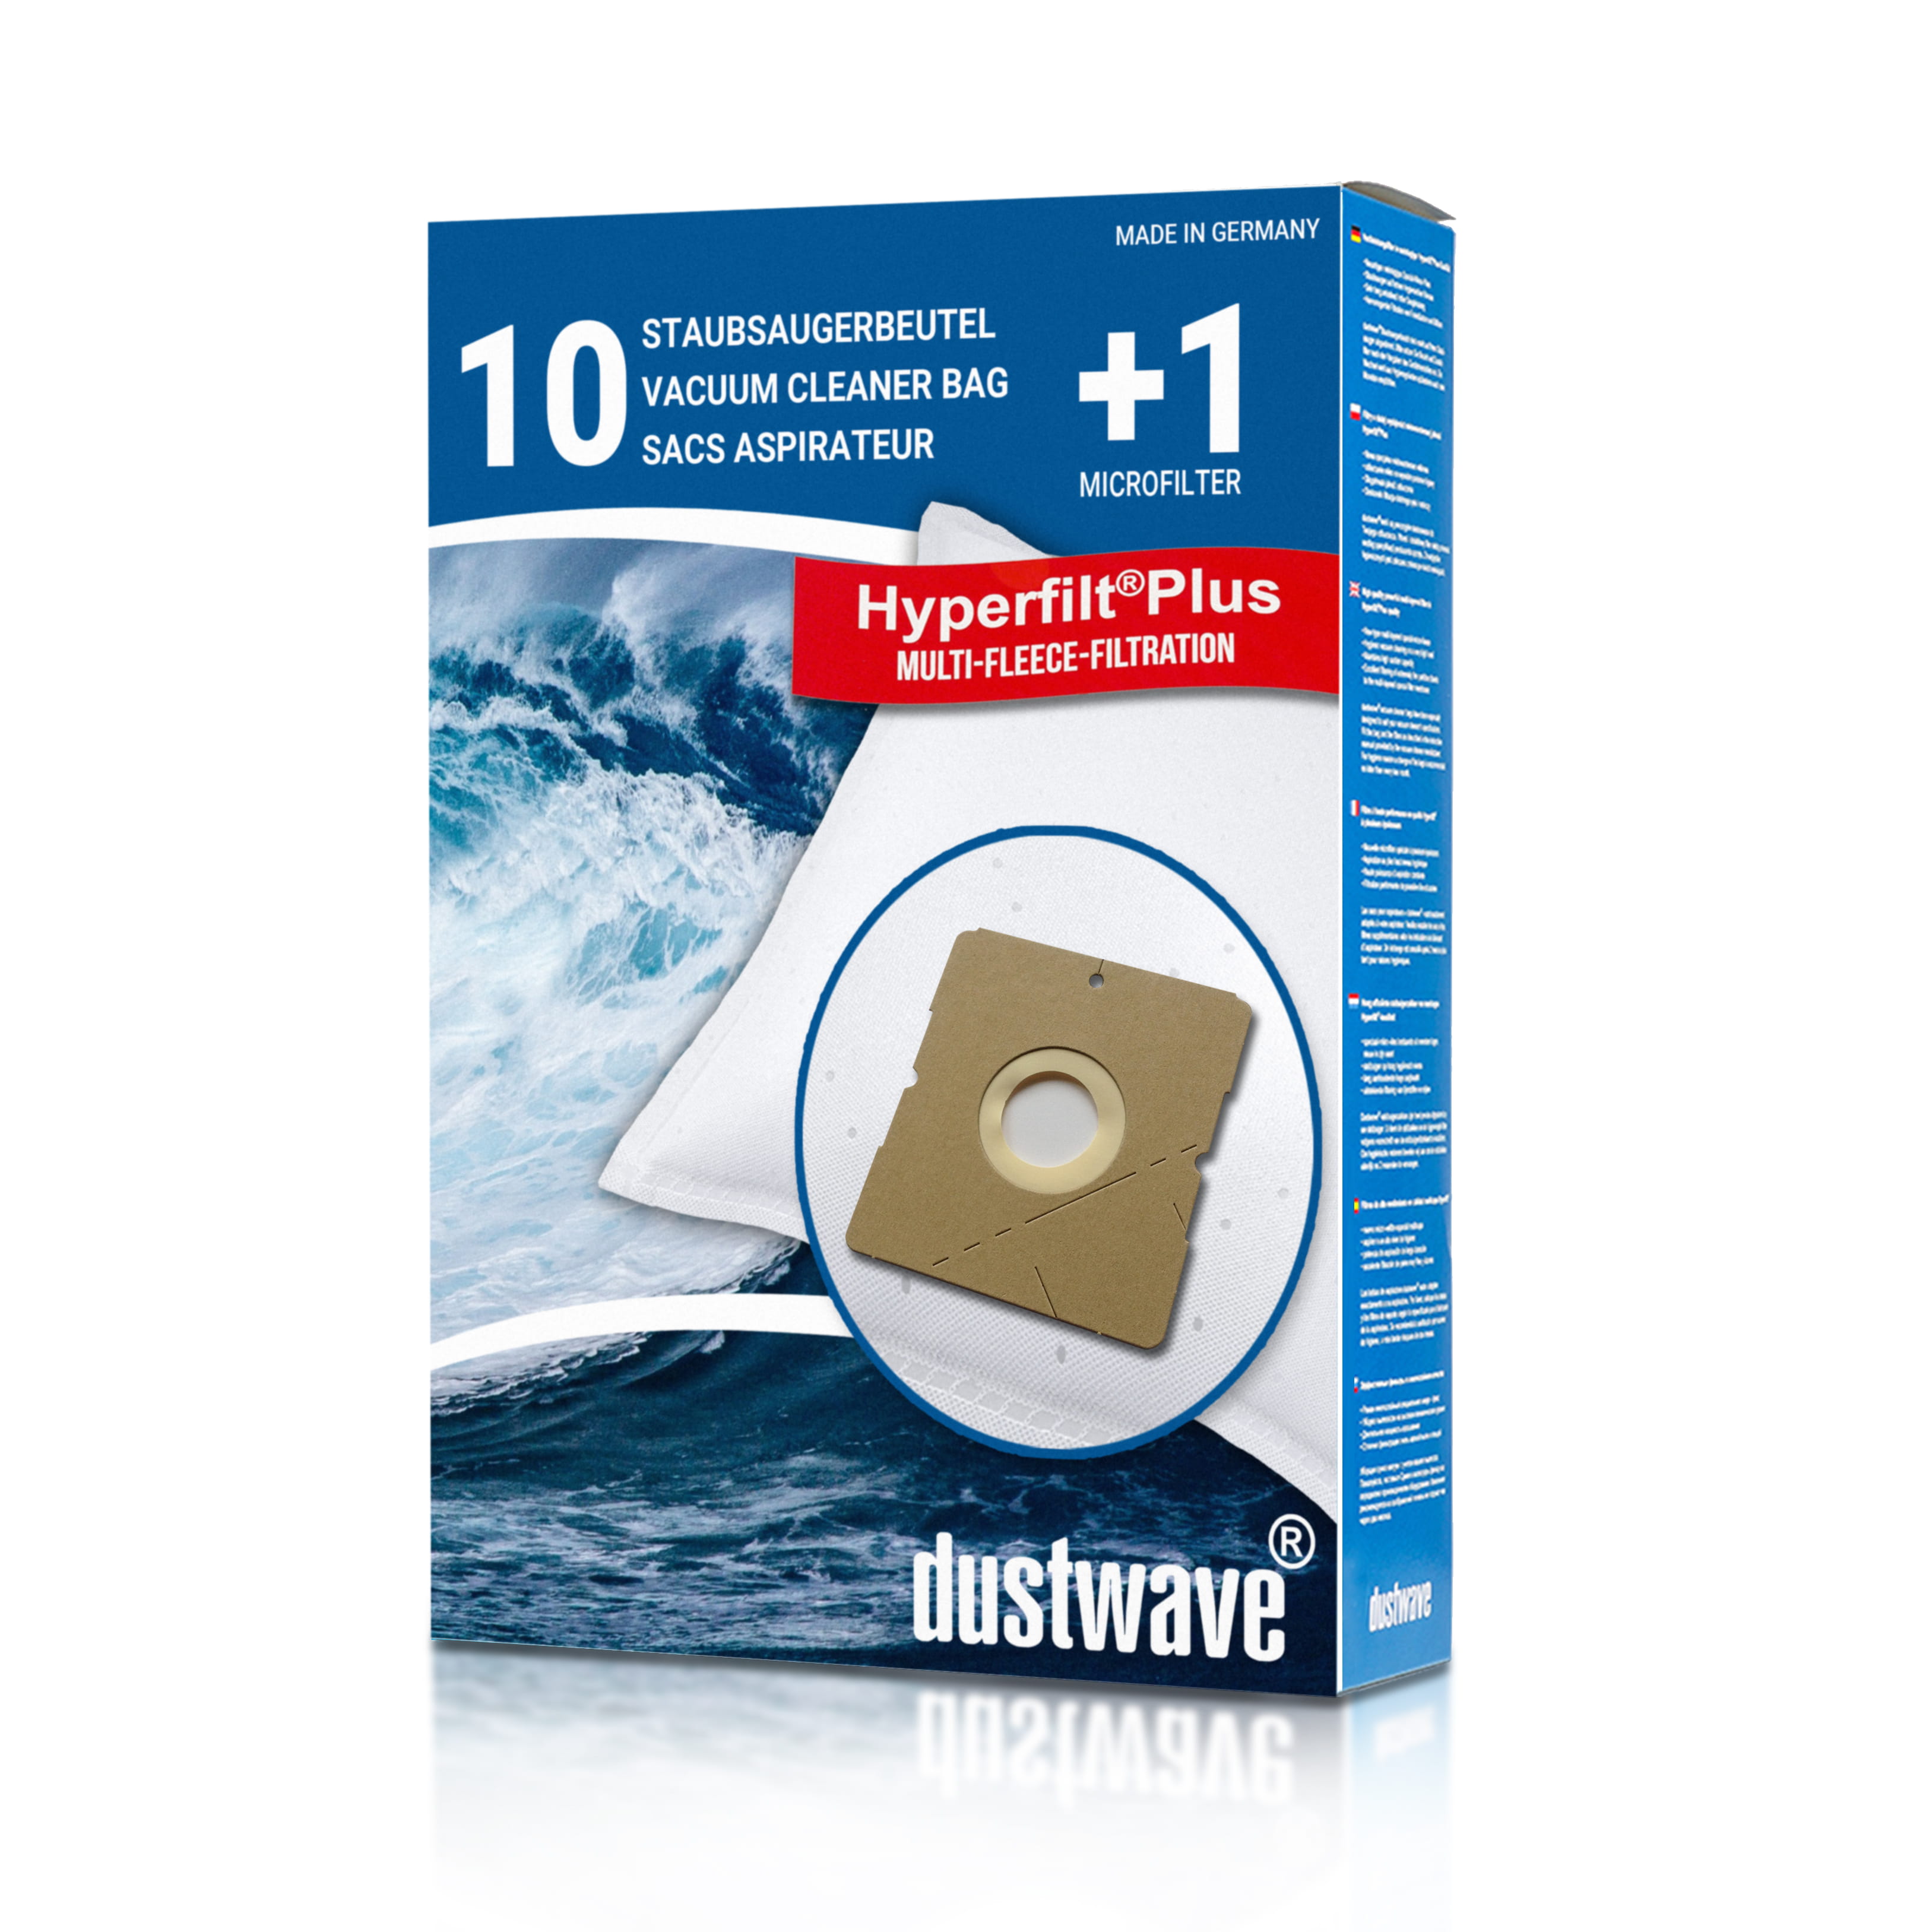 Dustwave® 10 Staubsaugerbeutel für Hoover TWDH1400 - hocheffizient, mehrlagiges Mikrovlies mit Hygieneverschluss - Made in Germany